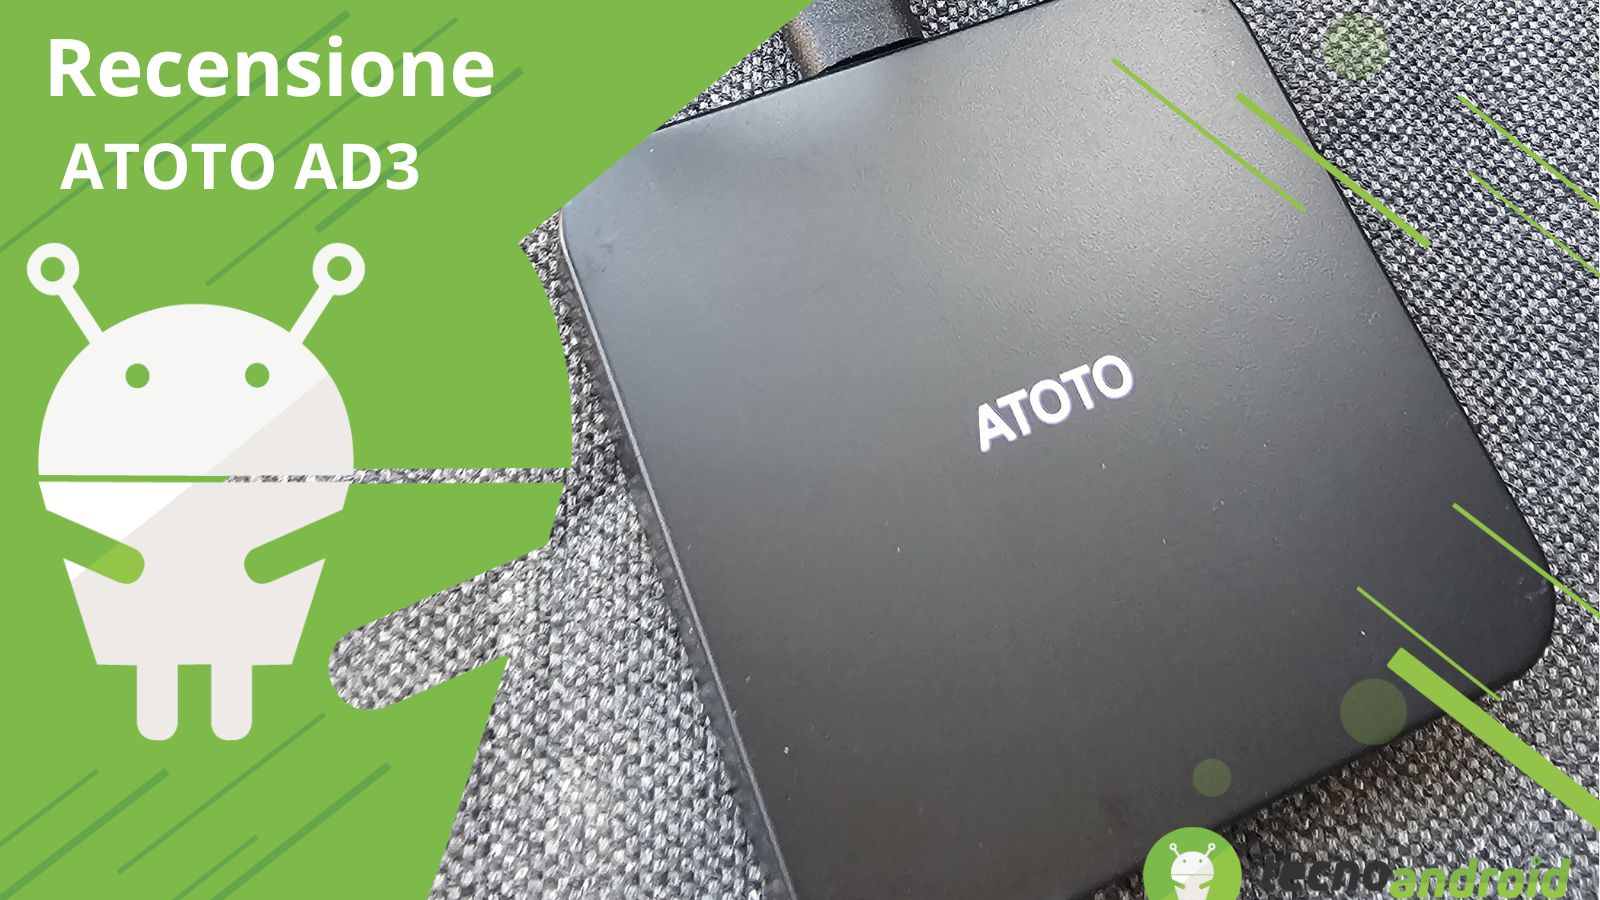 ATOTO AD3: adattatore wireless per CarPlay e Android Auto - Recensione